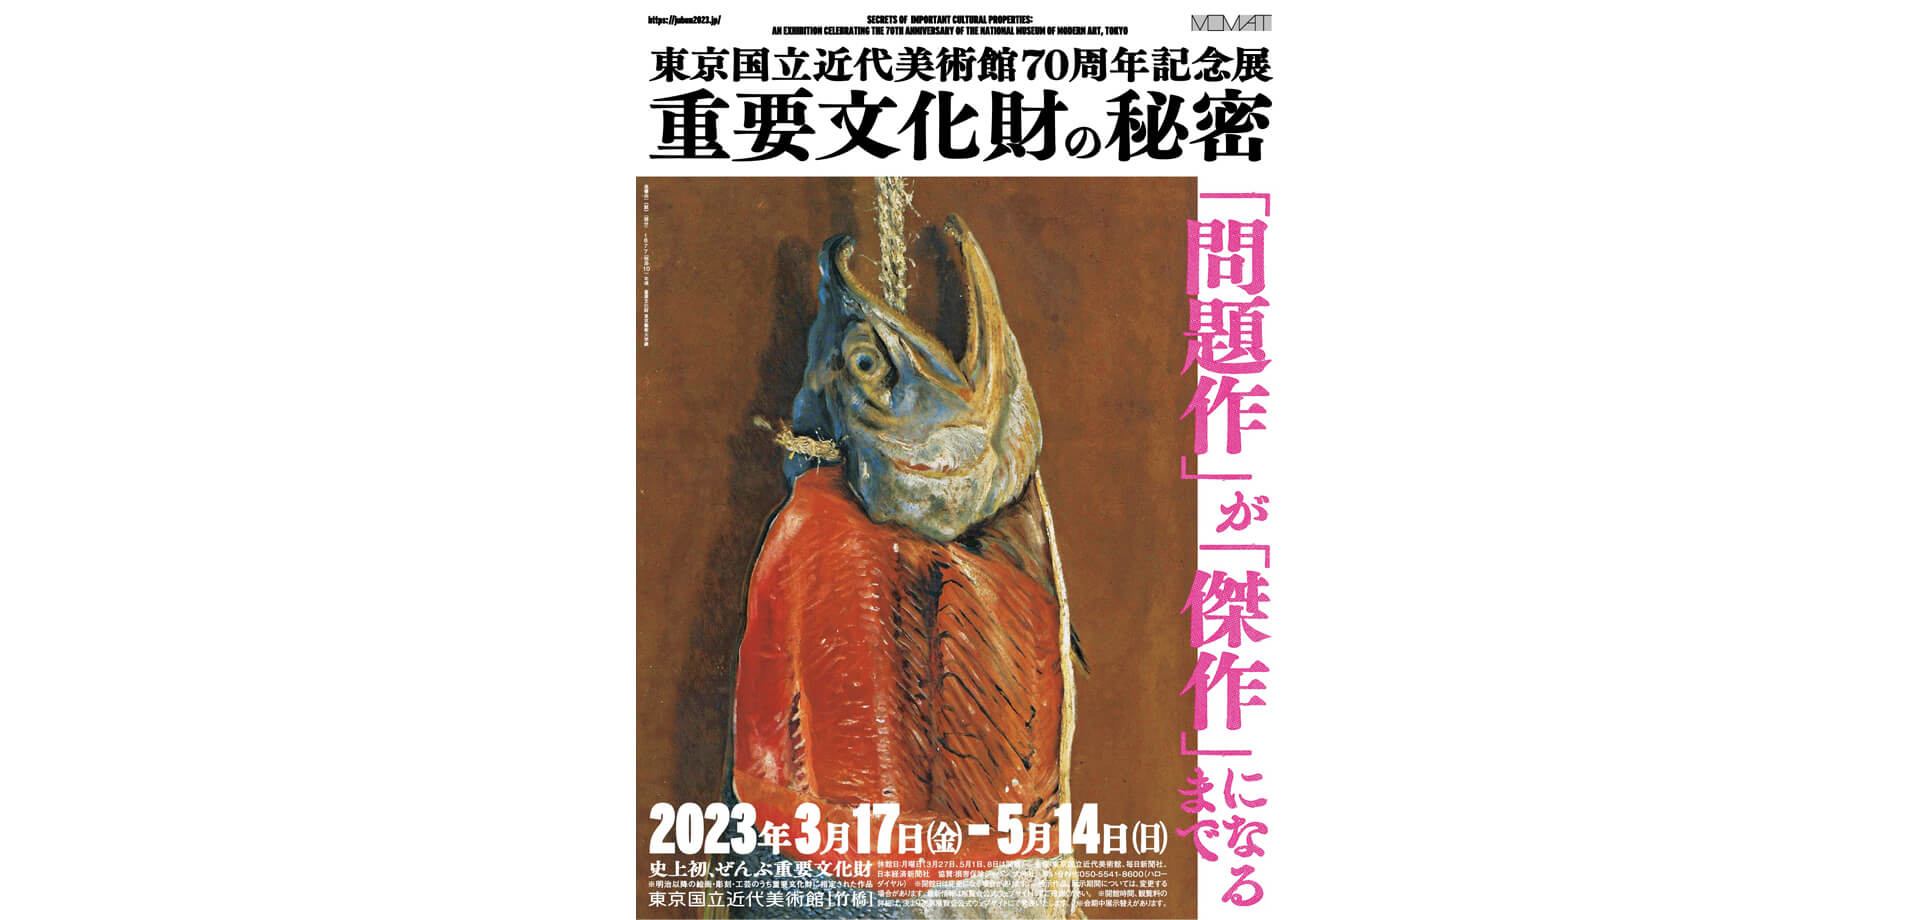 東京国立近代美術館 重要文化財の秘密